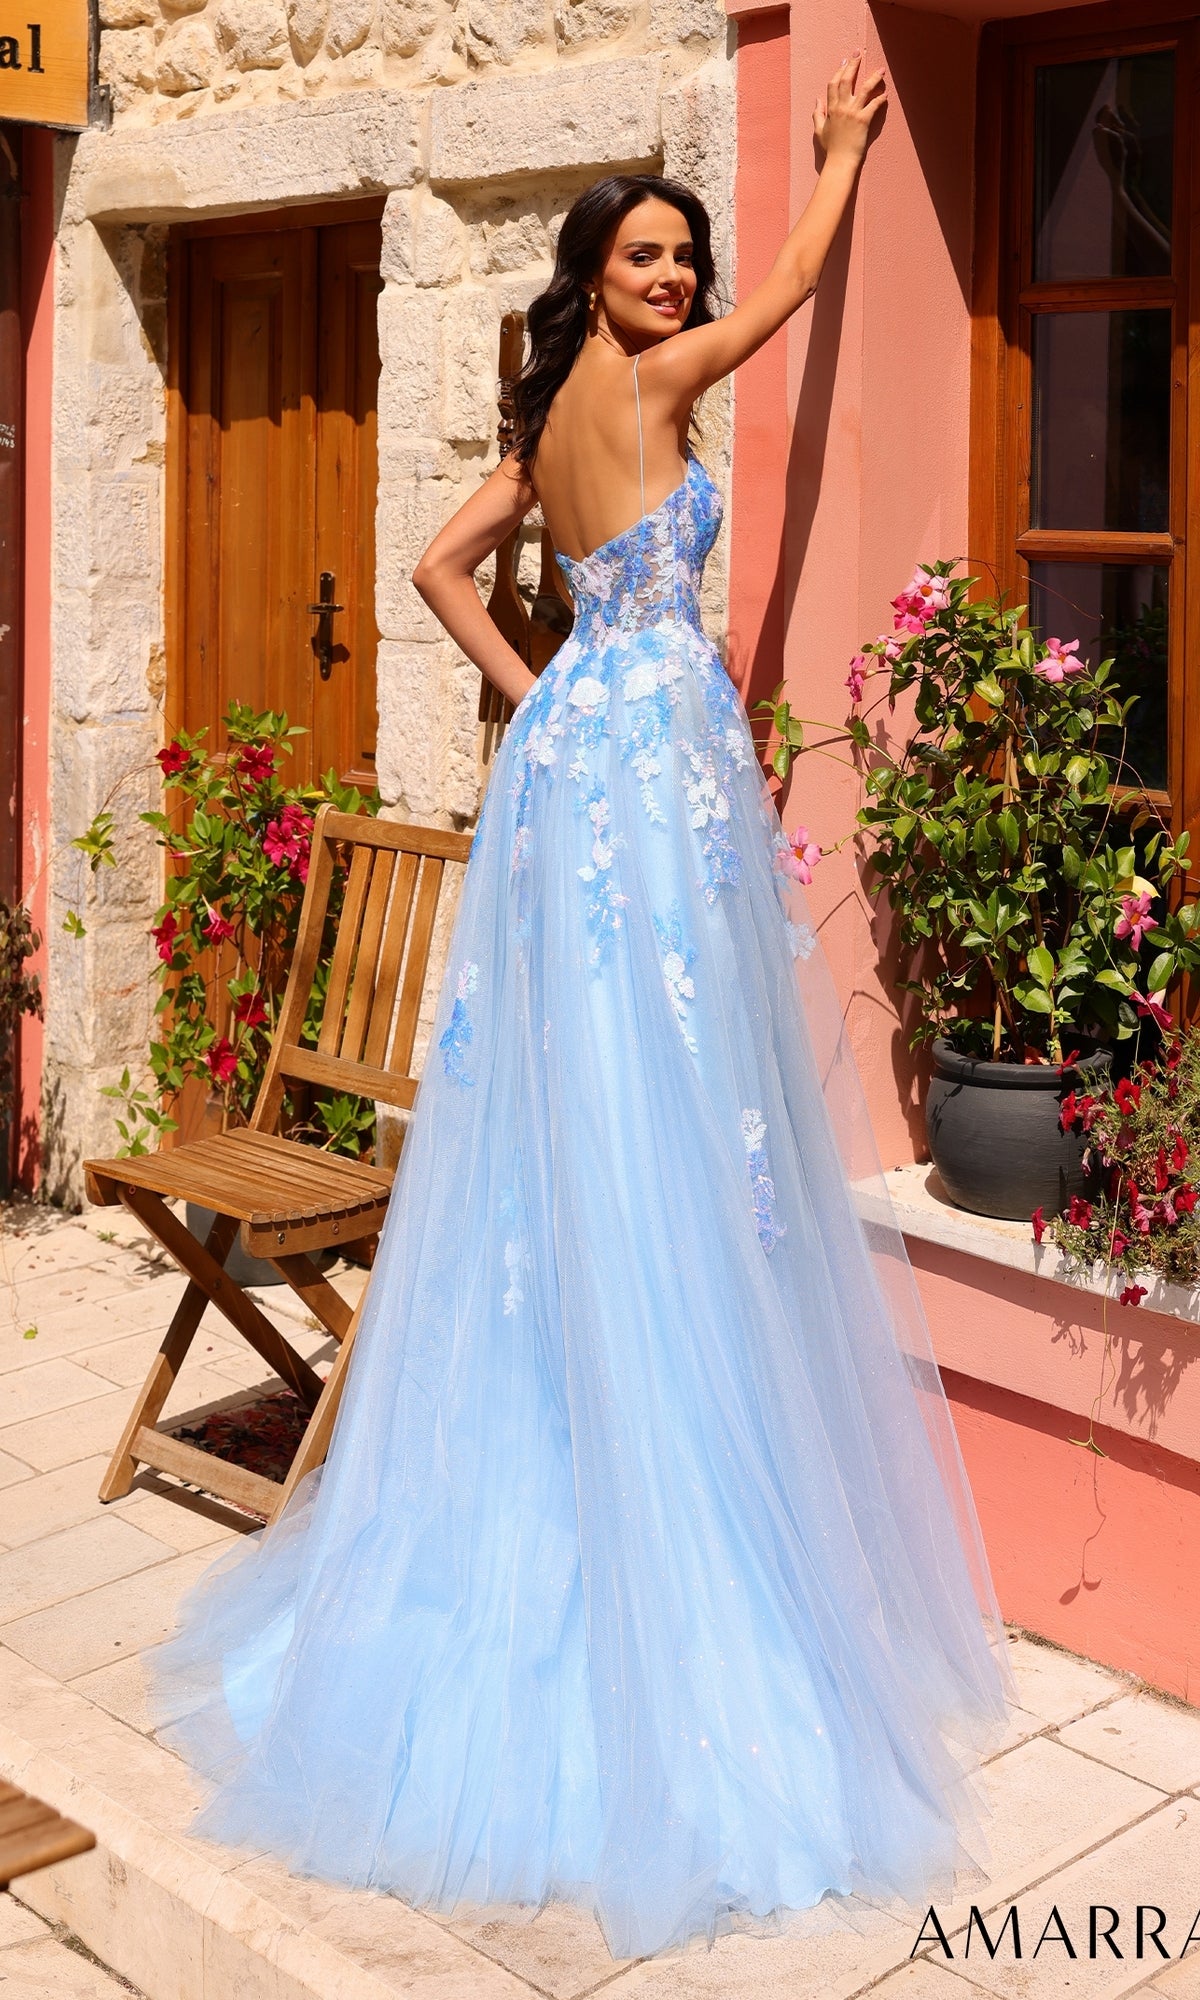 Amarra Long Prom Dress 88816